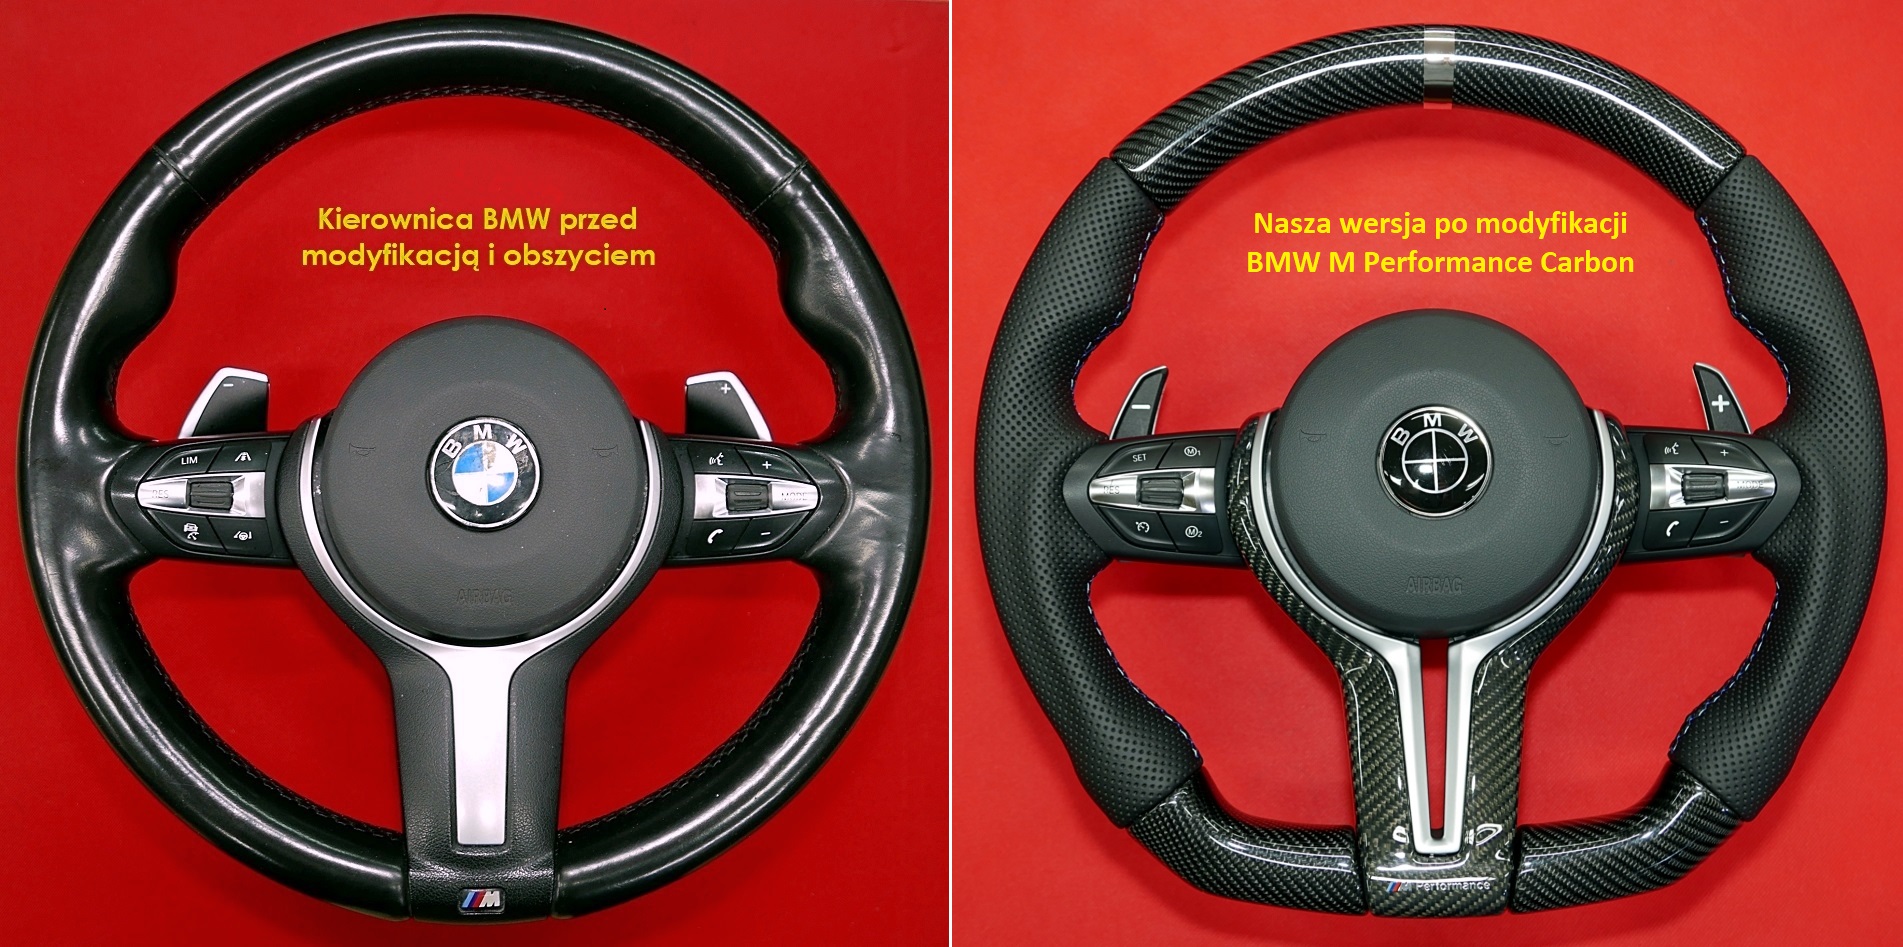 Tuning modyfikacja kierownica BMW M3 M4 M5 M6 MPerformance Carbon